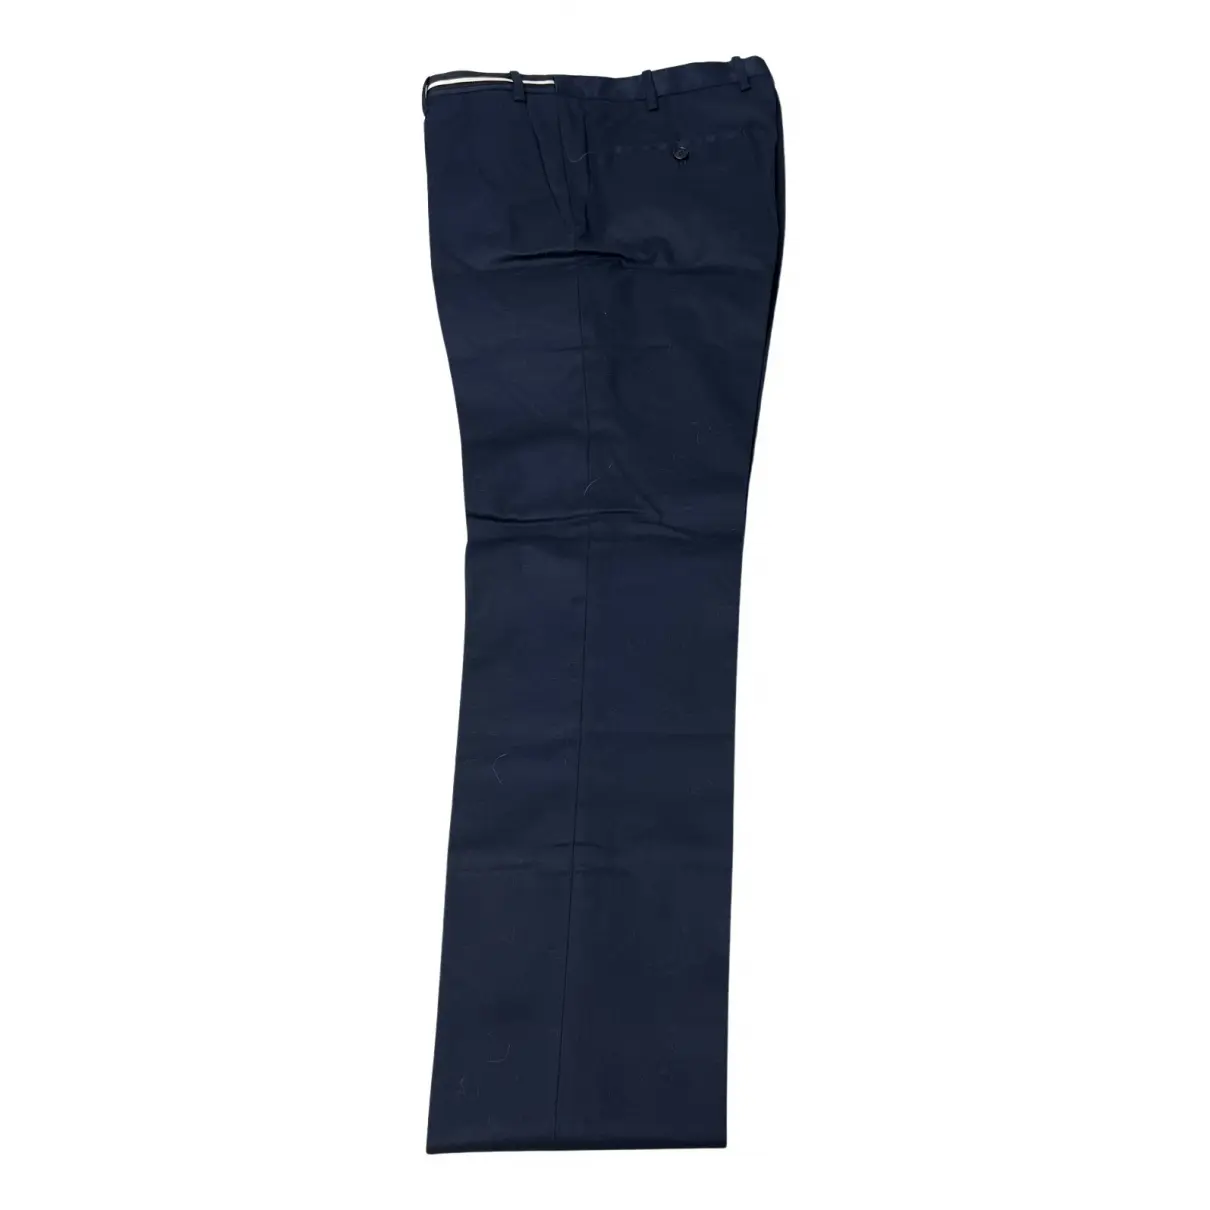 Buy Neil Barrett Trousers online